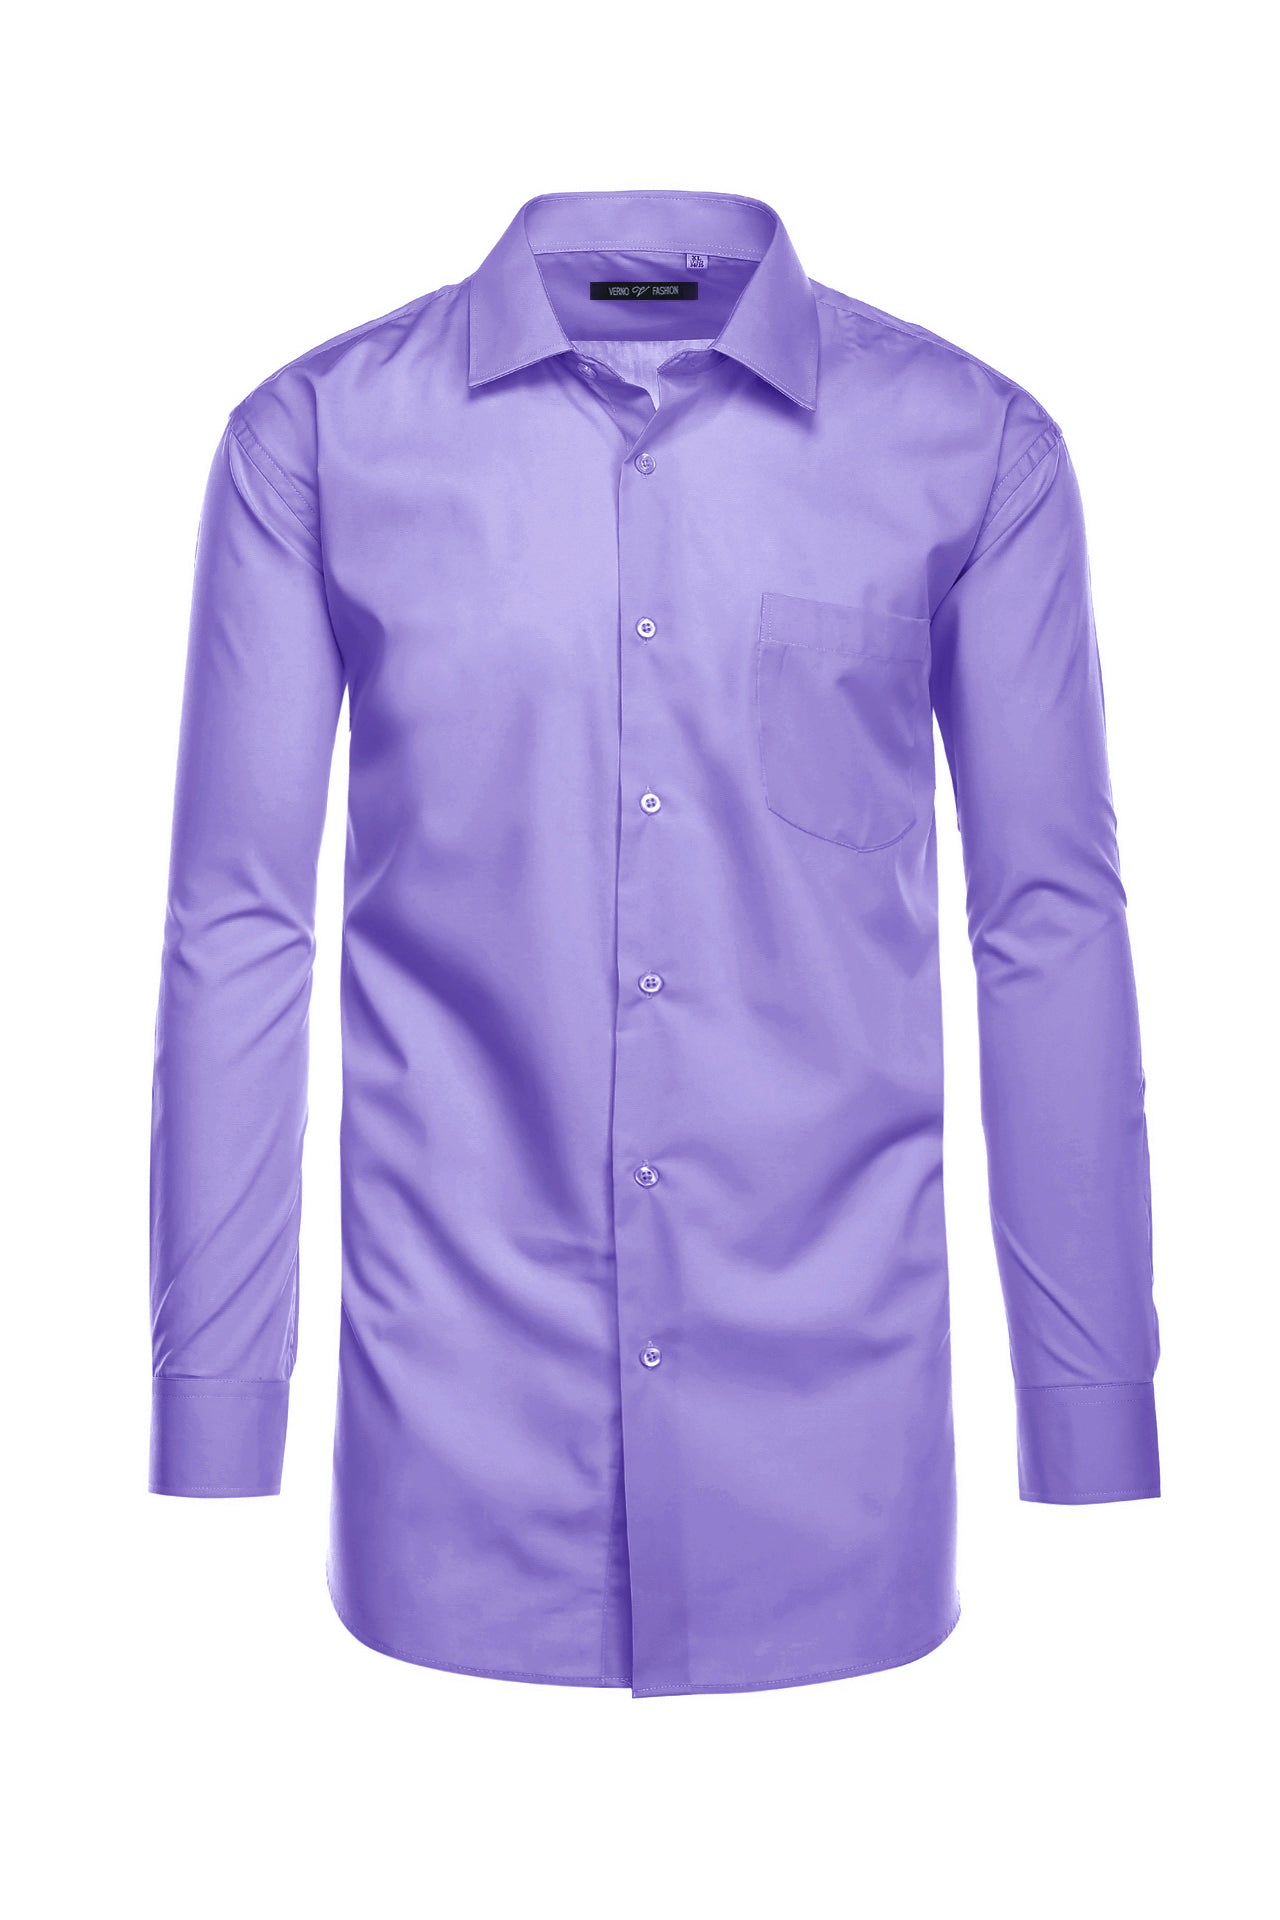 Cotton Blend Dress Shirt Regular Fit In Lavender